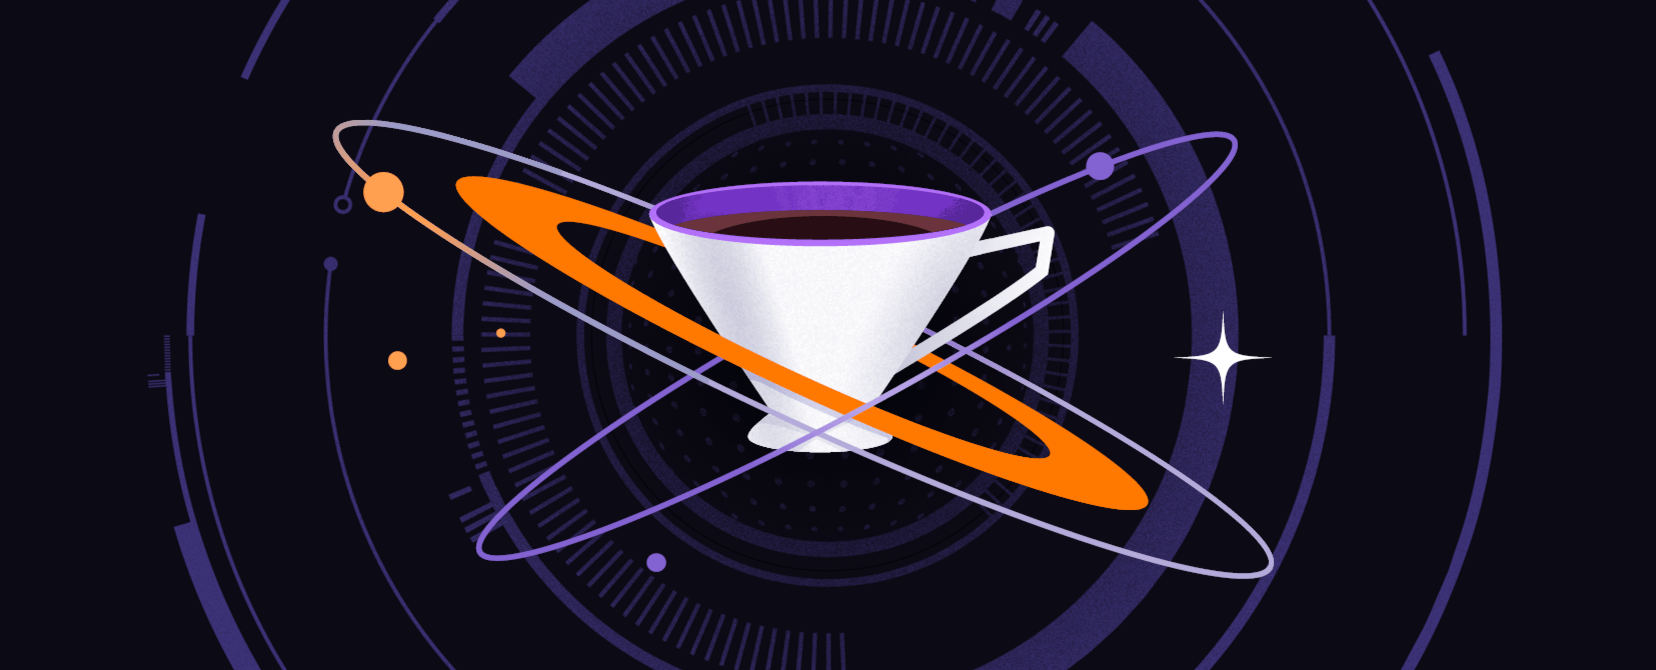 Czarna prostokątna plansza z białą filiżanką z kawą w centrum, otoczoną trzema orbitami, na tle fioletowego zarysu stacji kosmicznej 